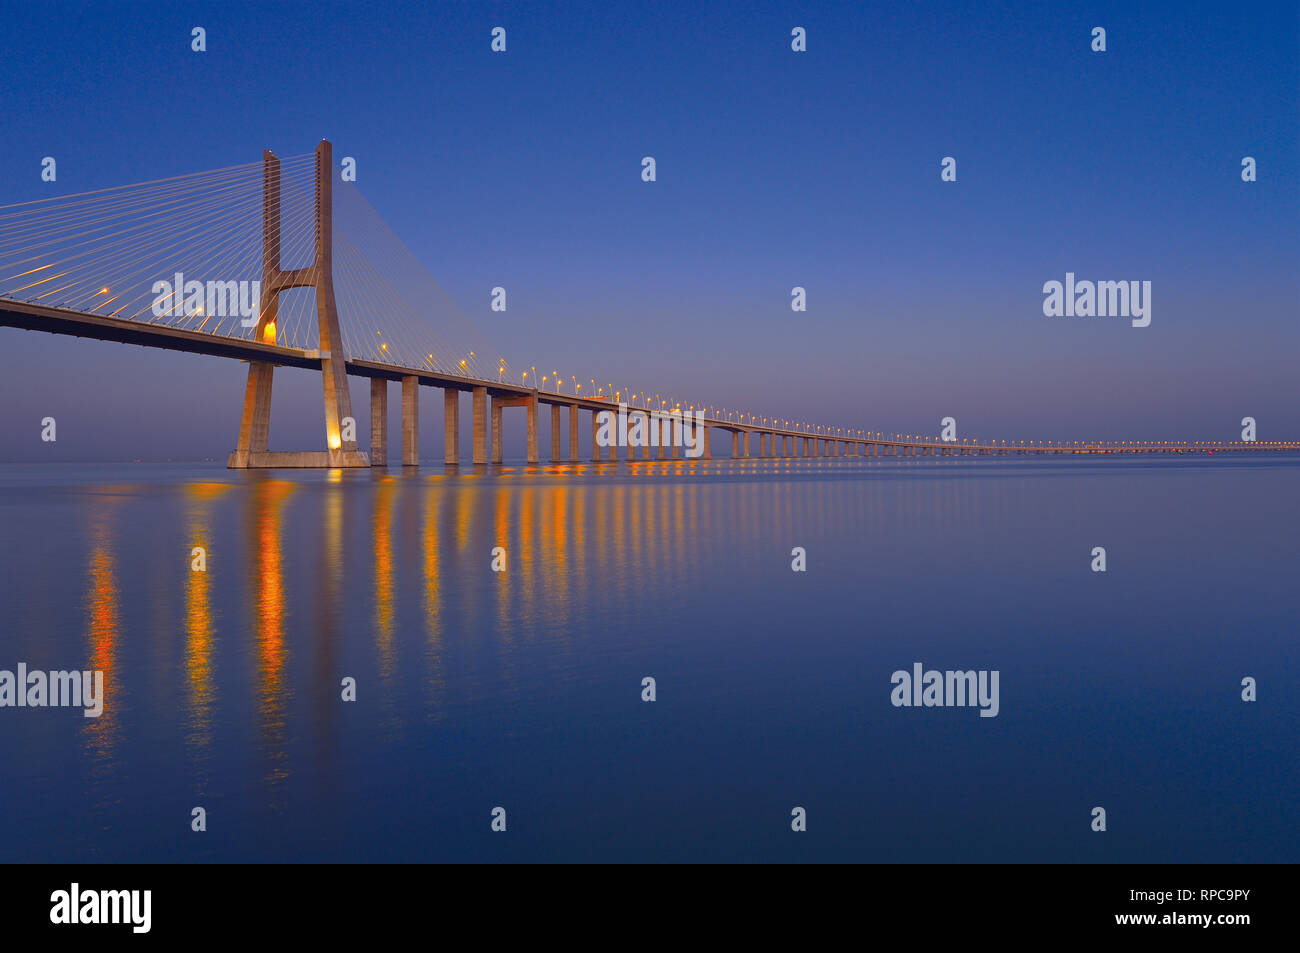 Elegante ponte in acciaio di notte passando chilometri con grande calma acqua di fiume Foto Stock